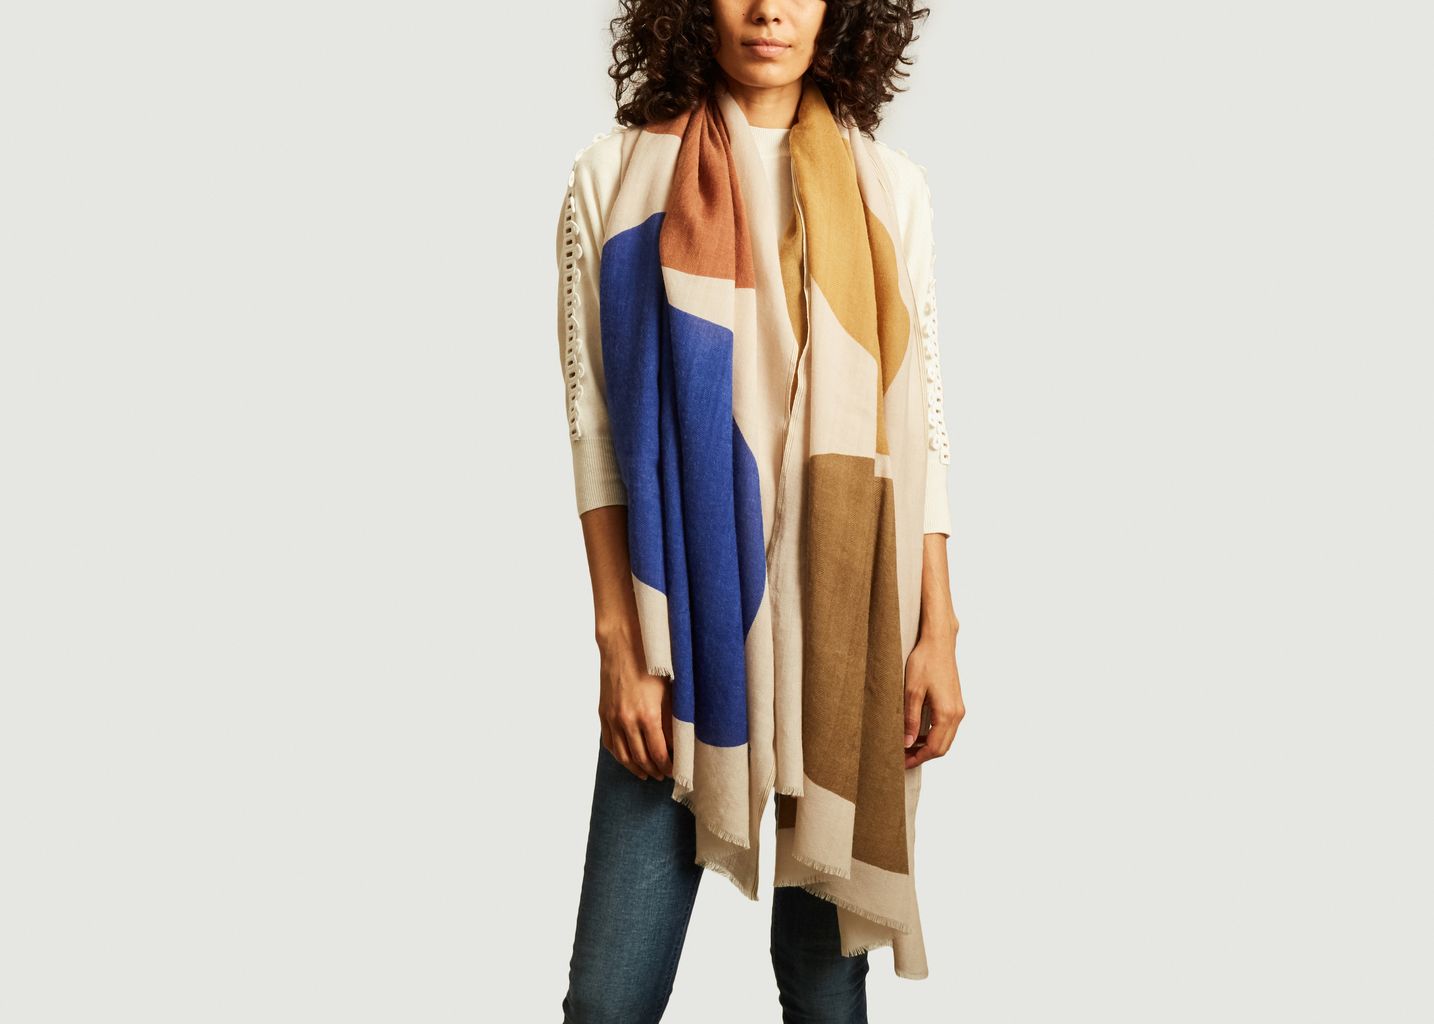 N°455 geometric pattern wool scarf - Moismont